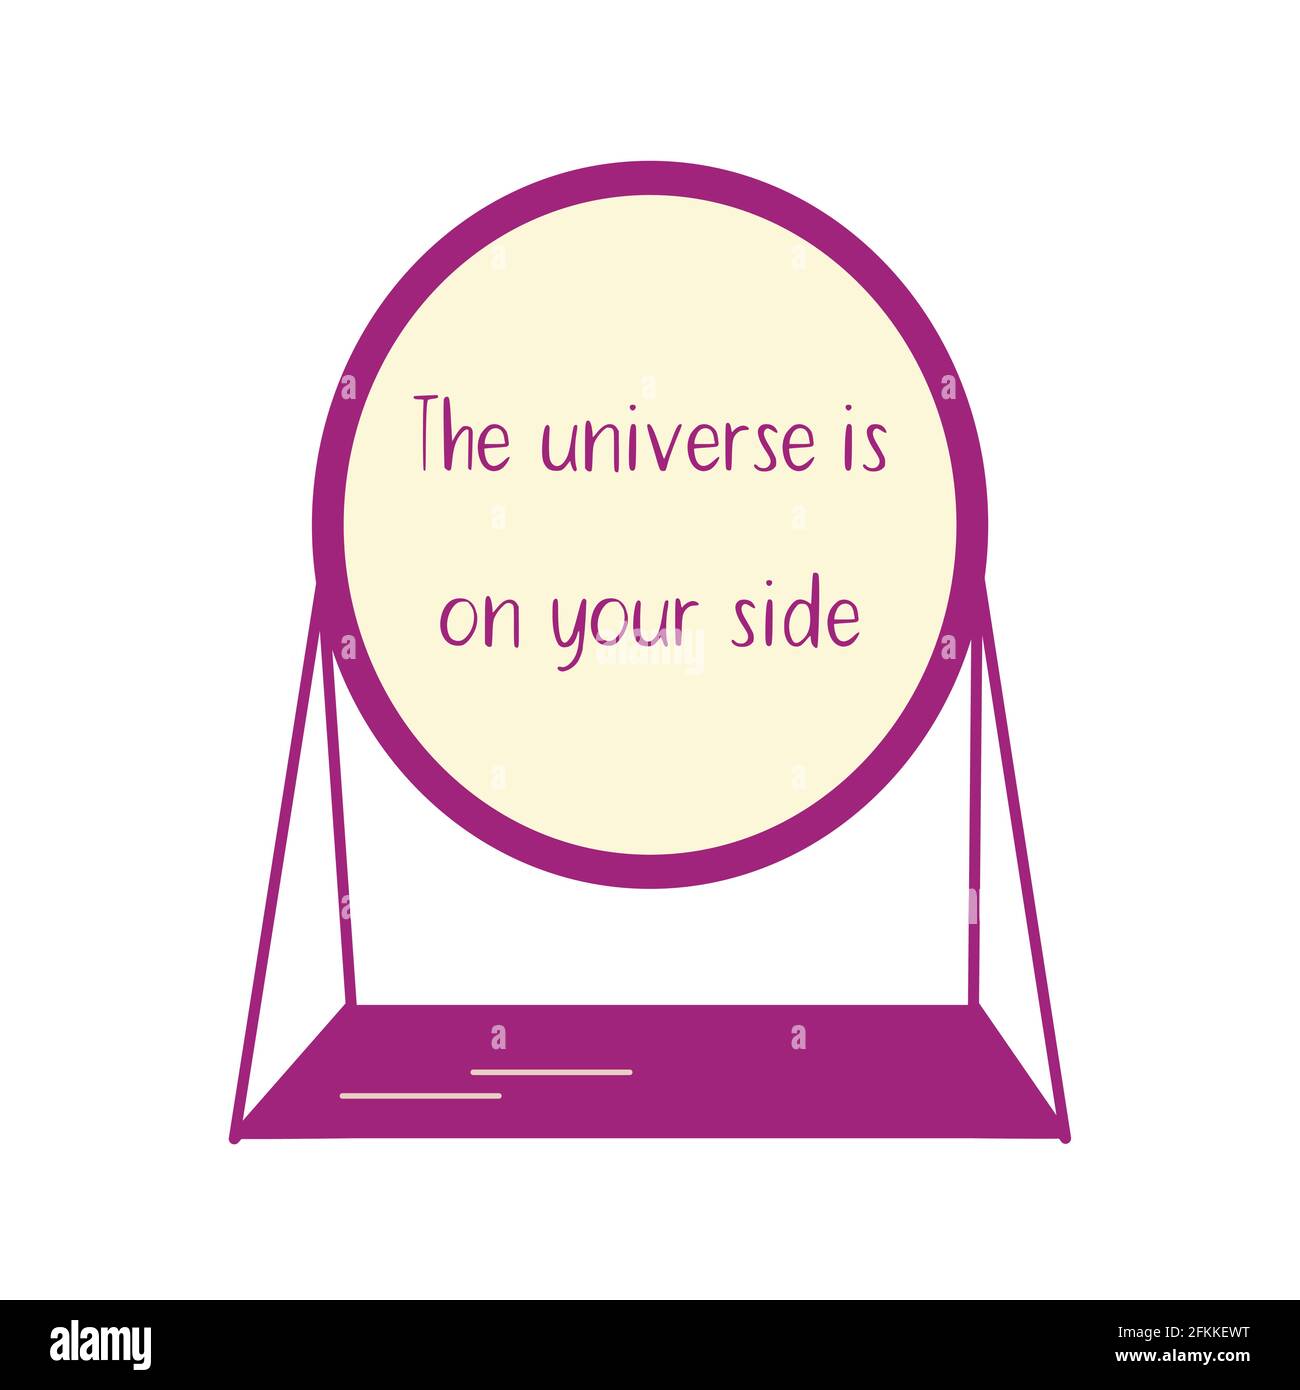 La forma ovale elegante dello specchio da tavolo riflette la frase che l' universo è al tuo fianco. Illustrazione colorata piatta vettore isolato.  Messaggio per una persona Immagine e Vettoriale - Alamy